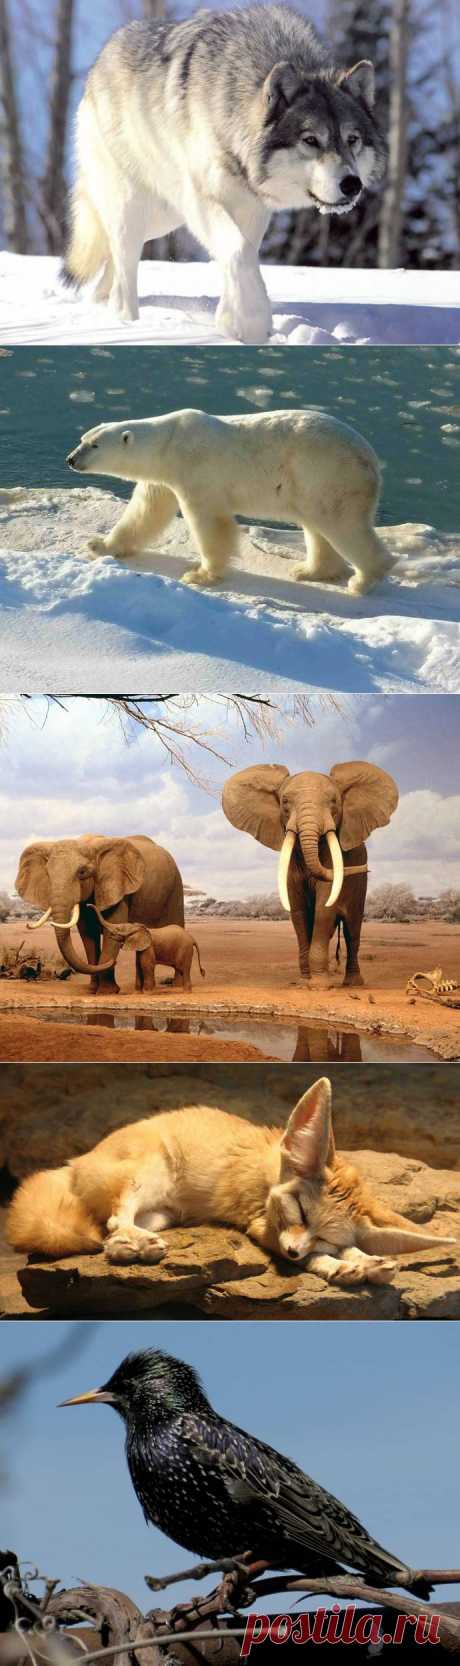 Загадки эволюции: Размеры животных зависят от климата - Хорошие новости про животных